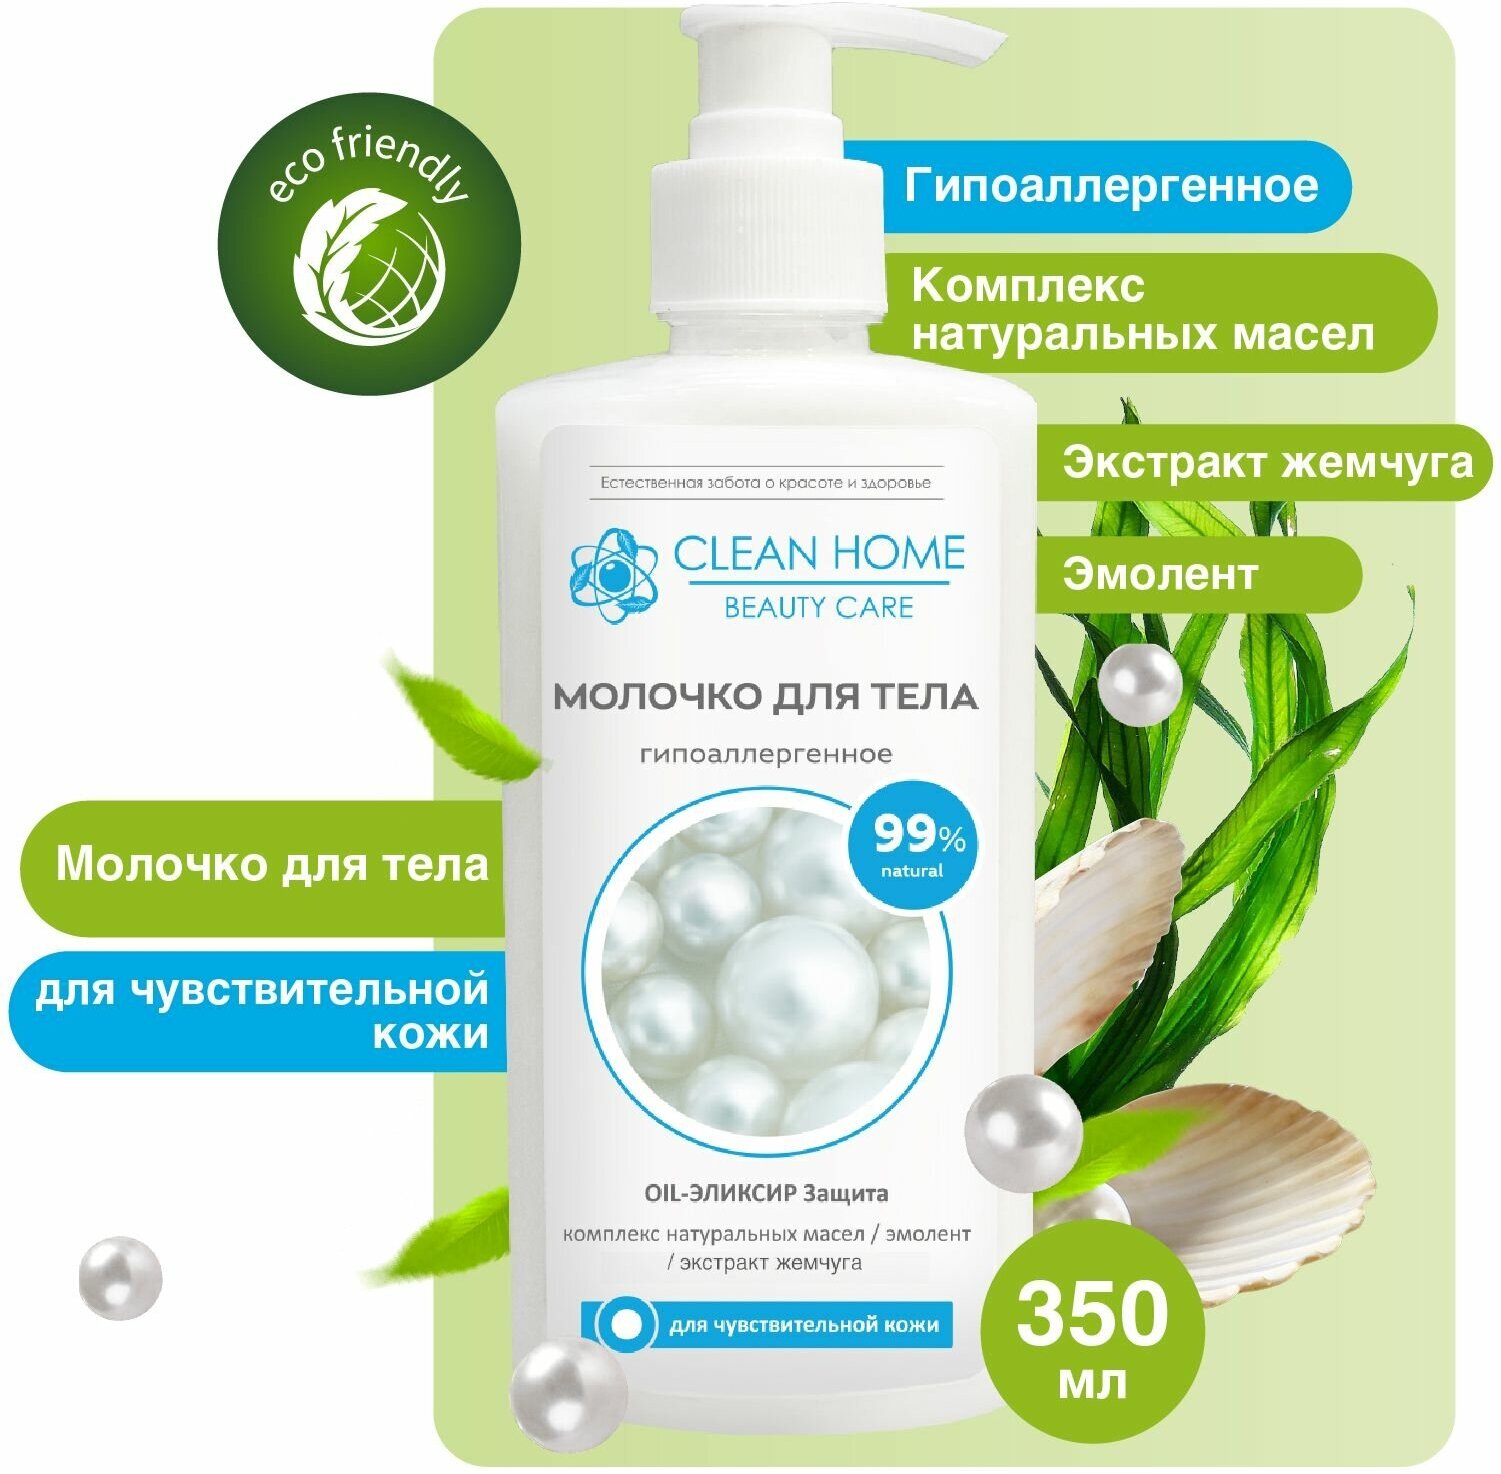 Молочко для тела Clean Home Beauty Care Увлажняющее Гипоаллергенное для чувствительной кожи 350мл